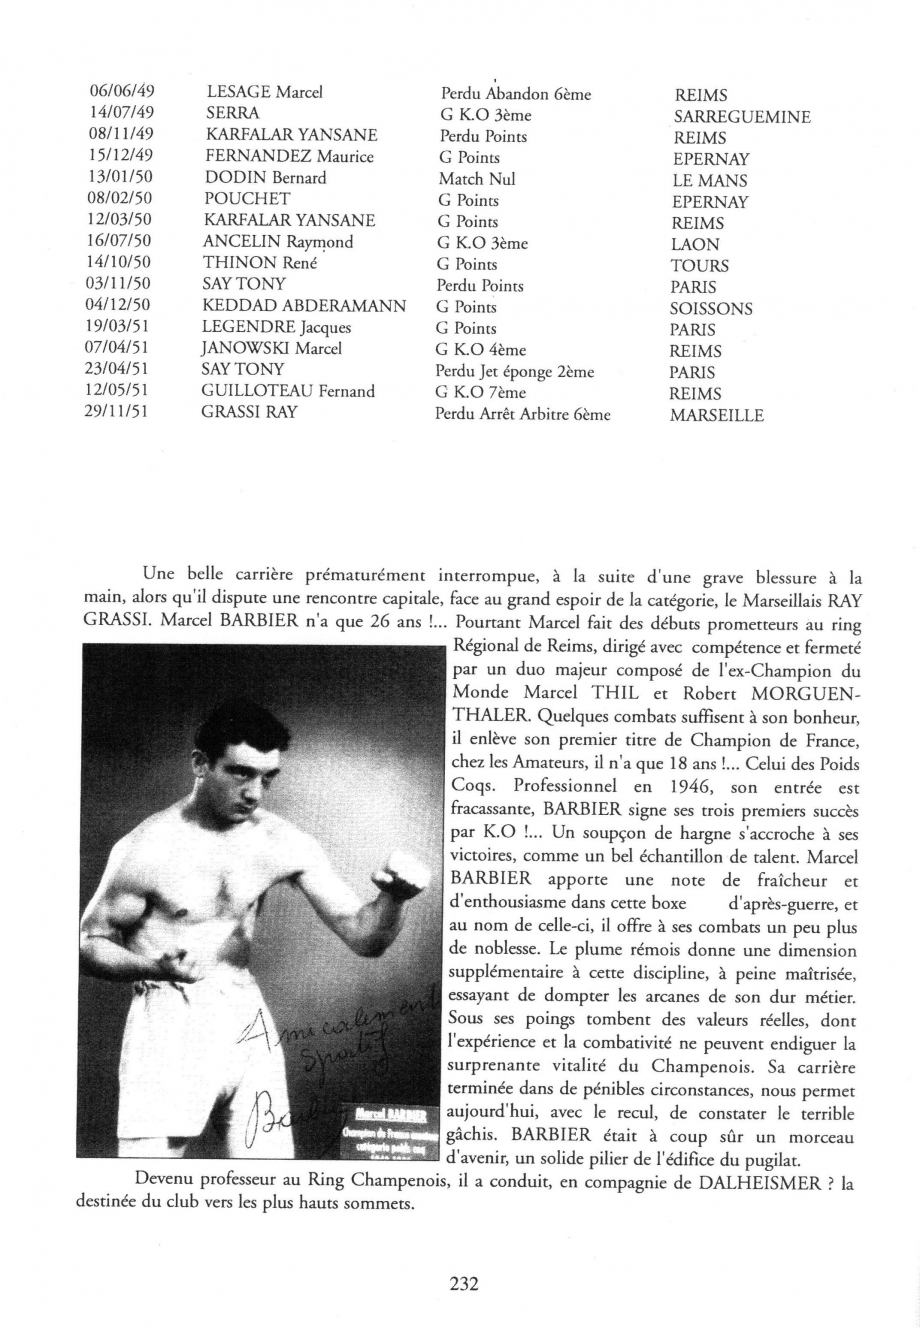 Marcel BARBIER - Palmarès boxeur page 2.jpg